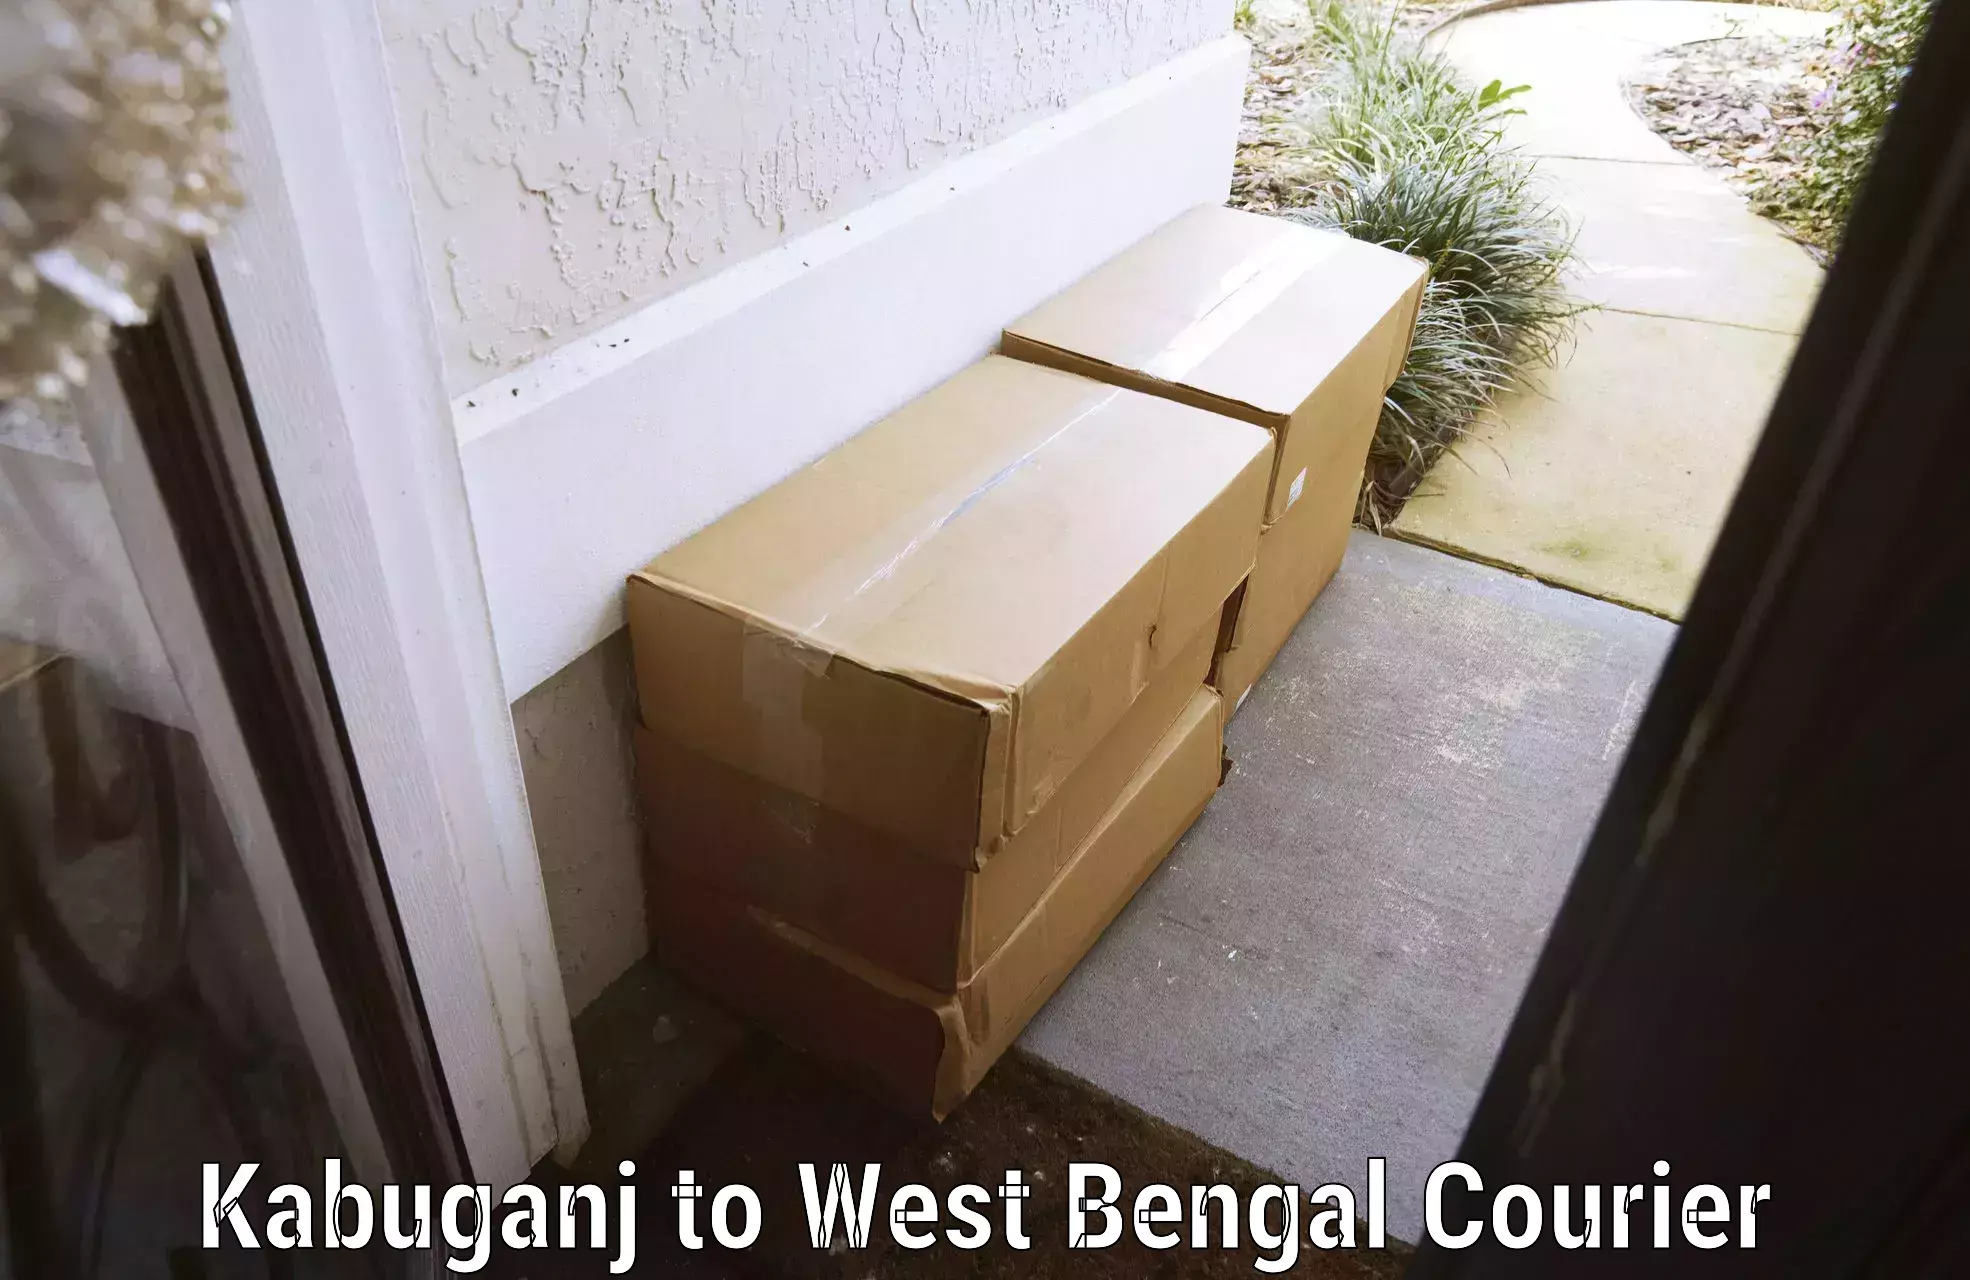 Flexible luggage courier service Kabuganj to Mekhliganj